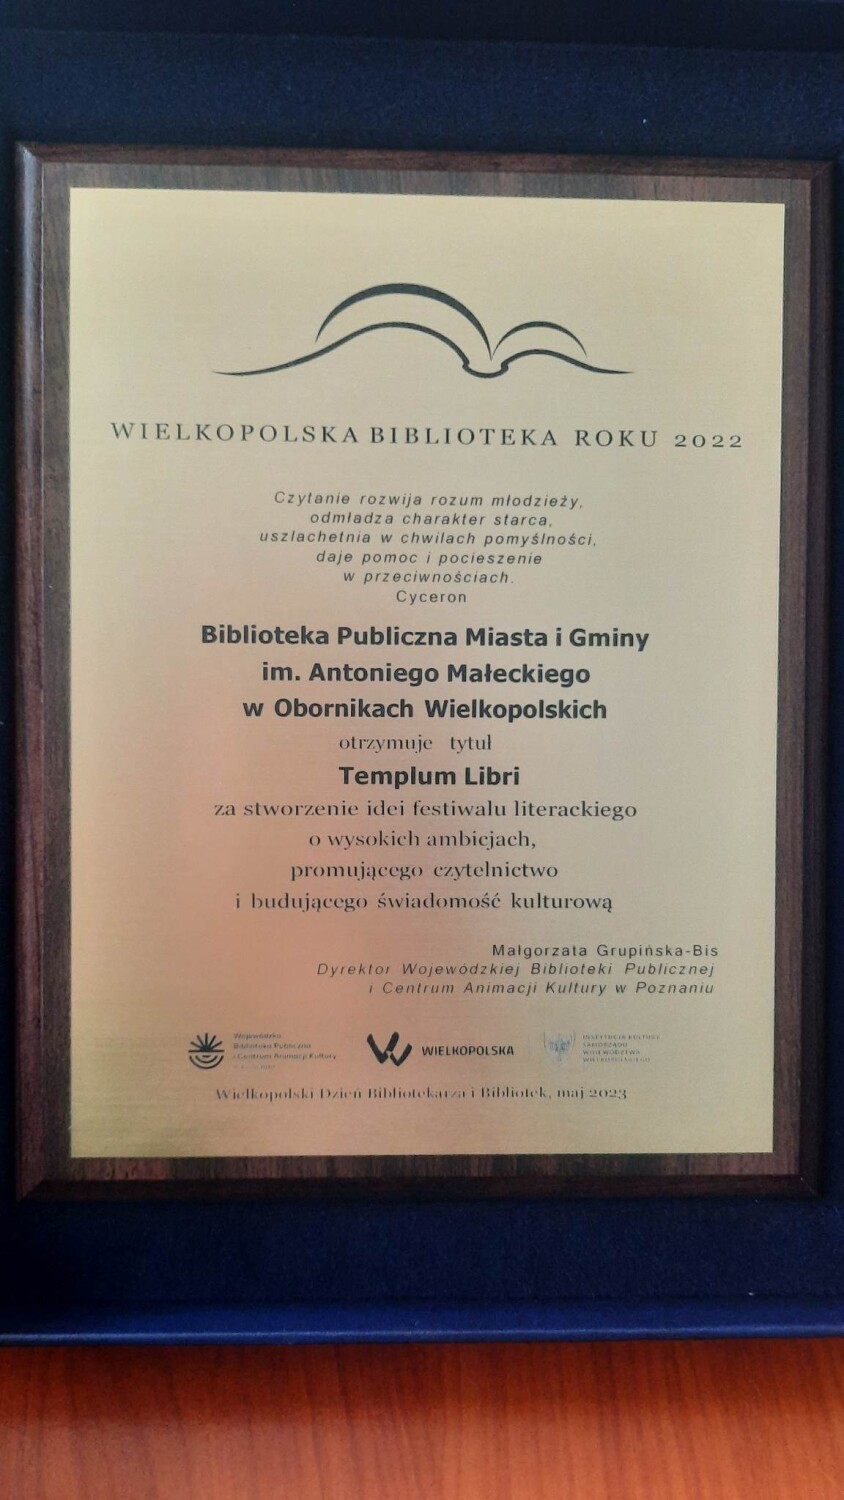 Biblioteka Publiczna w Obornikach wśród najlepszych Wielkopolskich Bibliotek Roku 2022